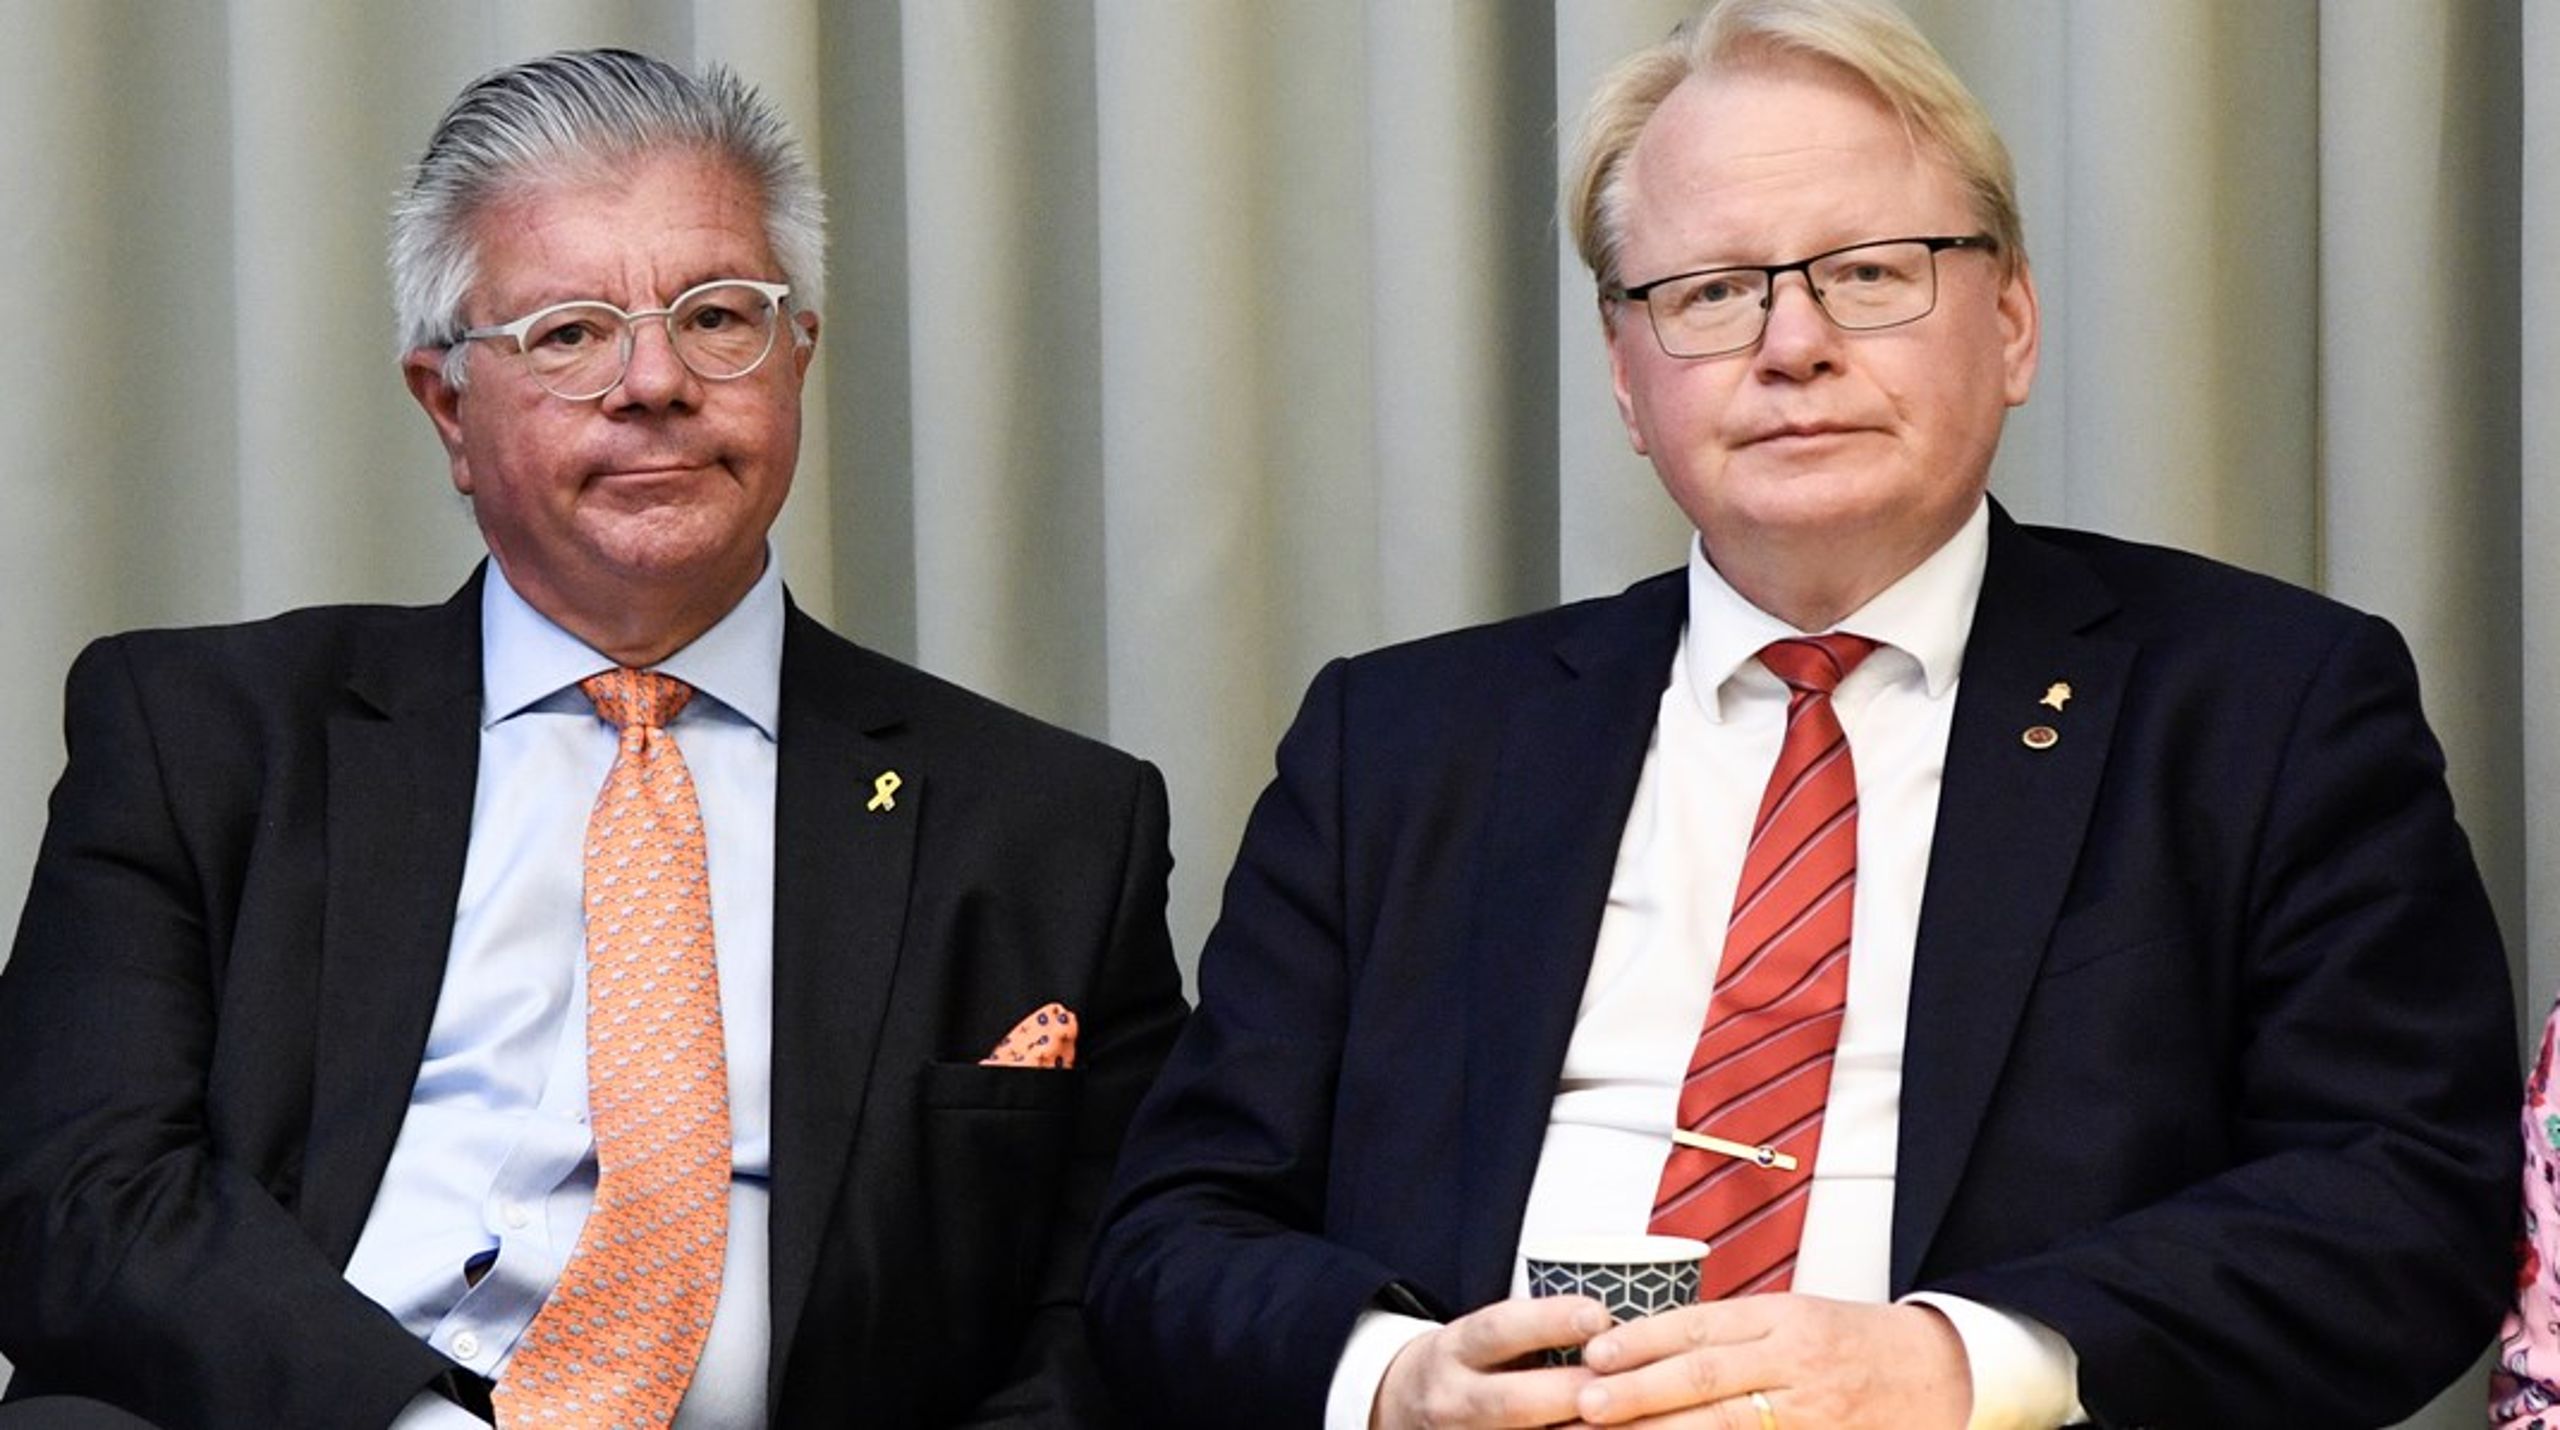 Försvarsberedningens ordförande Hans Wallmark (M) och Peter Hultqvist (S), ledamot och ordförande i försvarsutskottet.